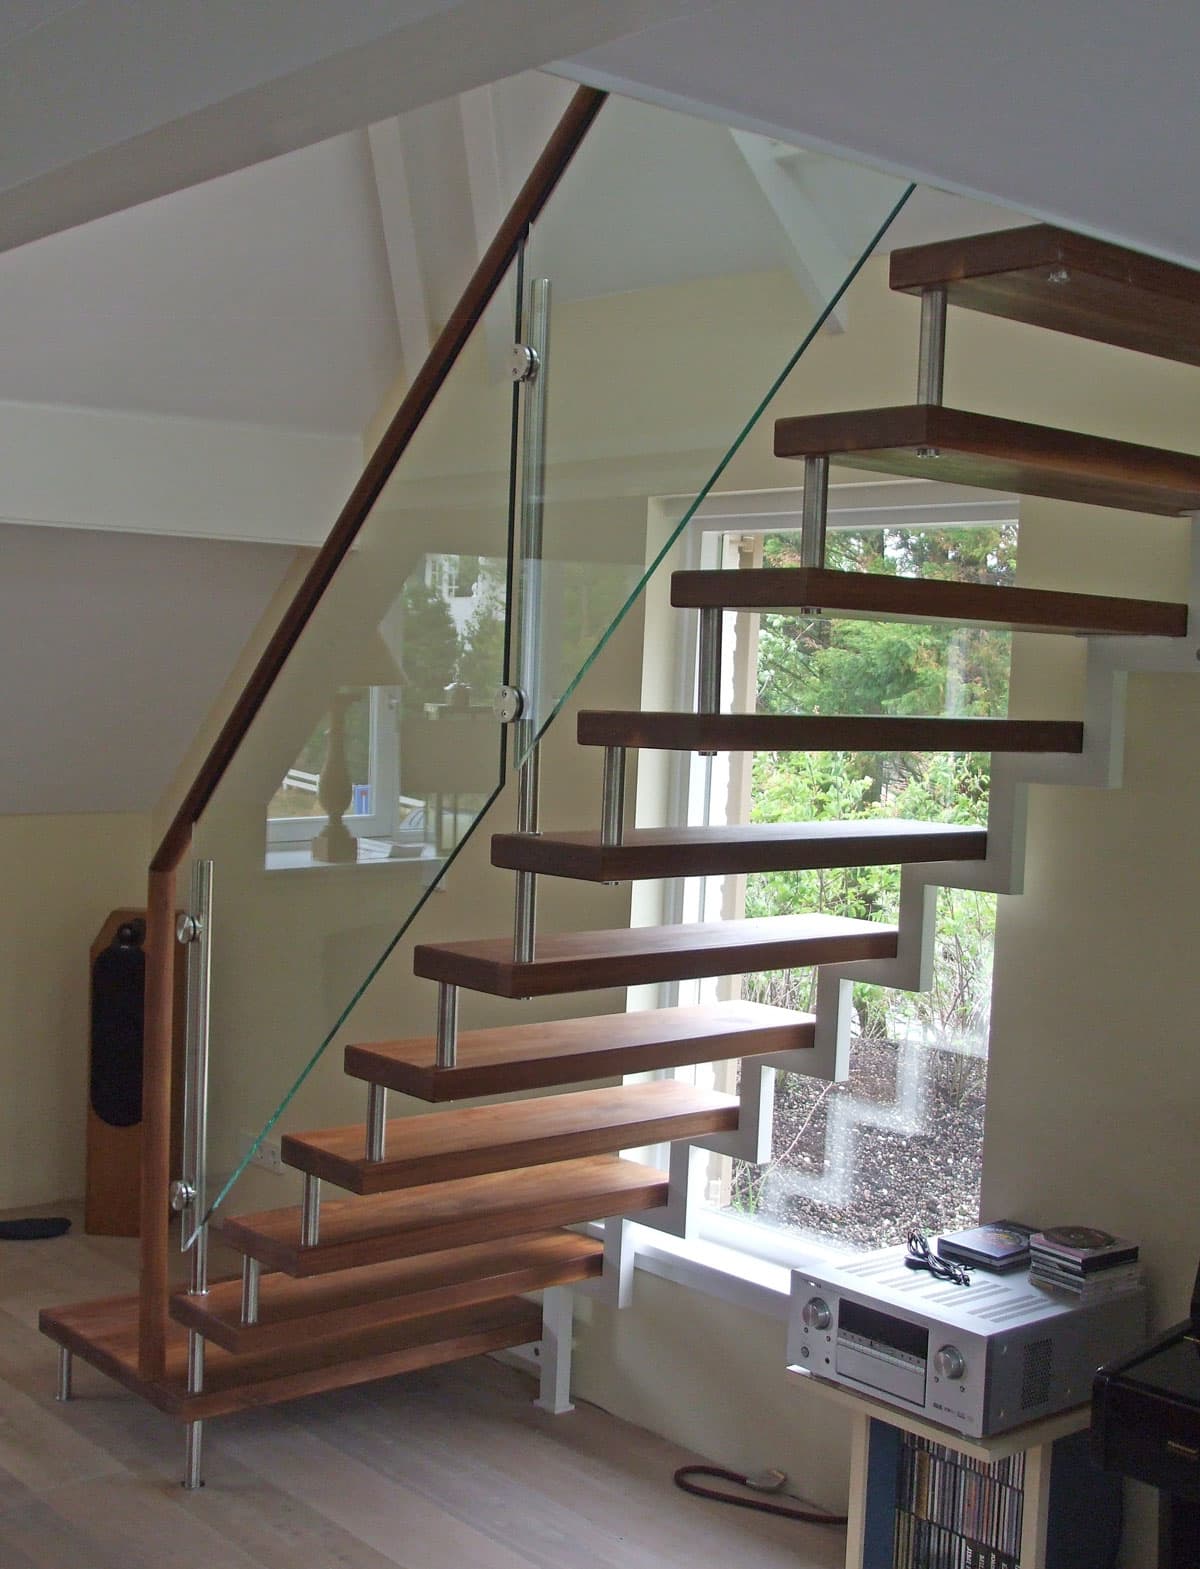 Vrijdragende trap met moderne balustrade